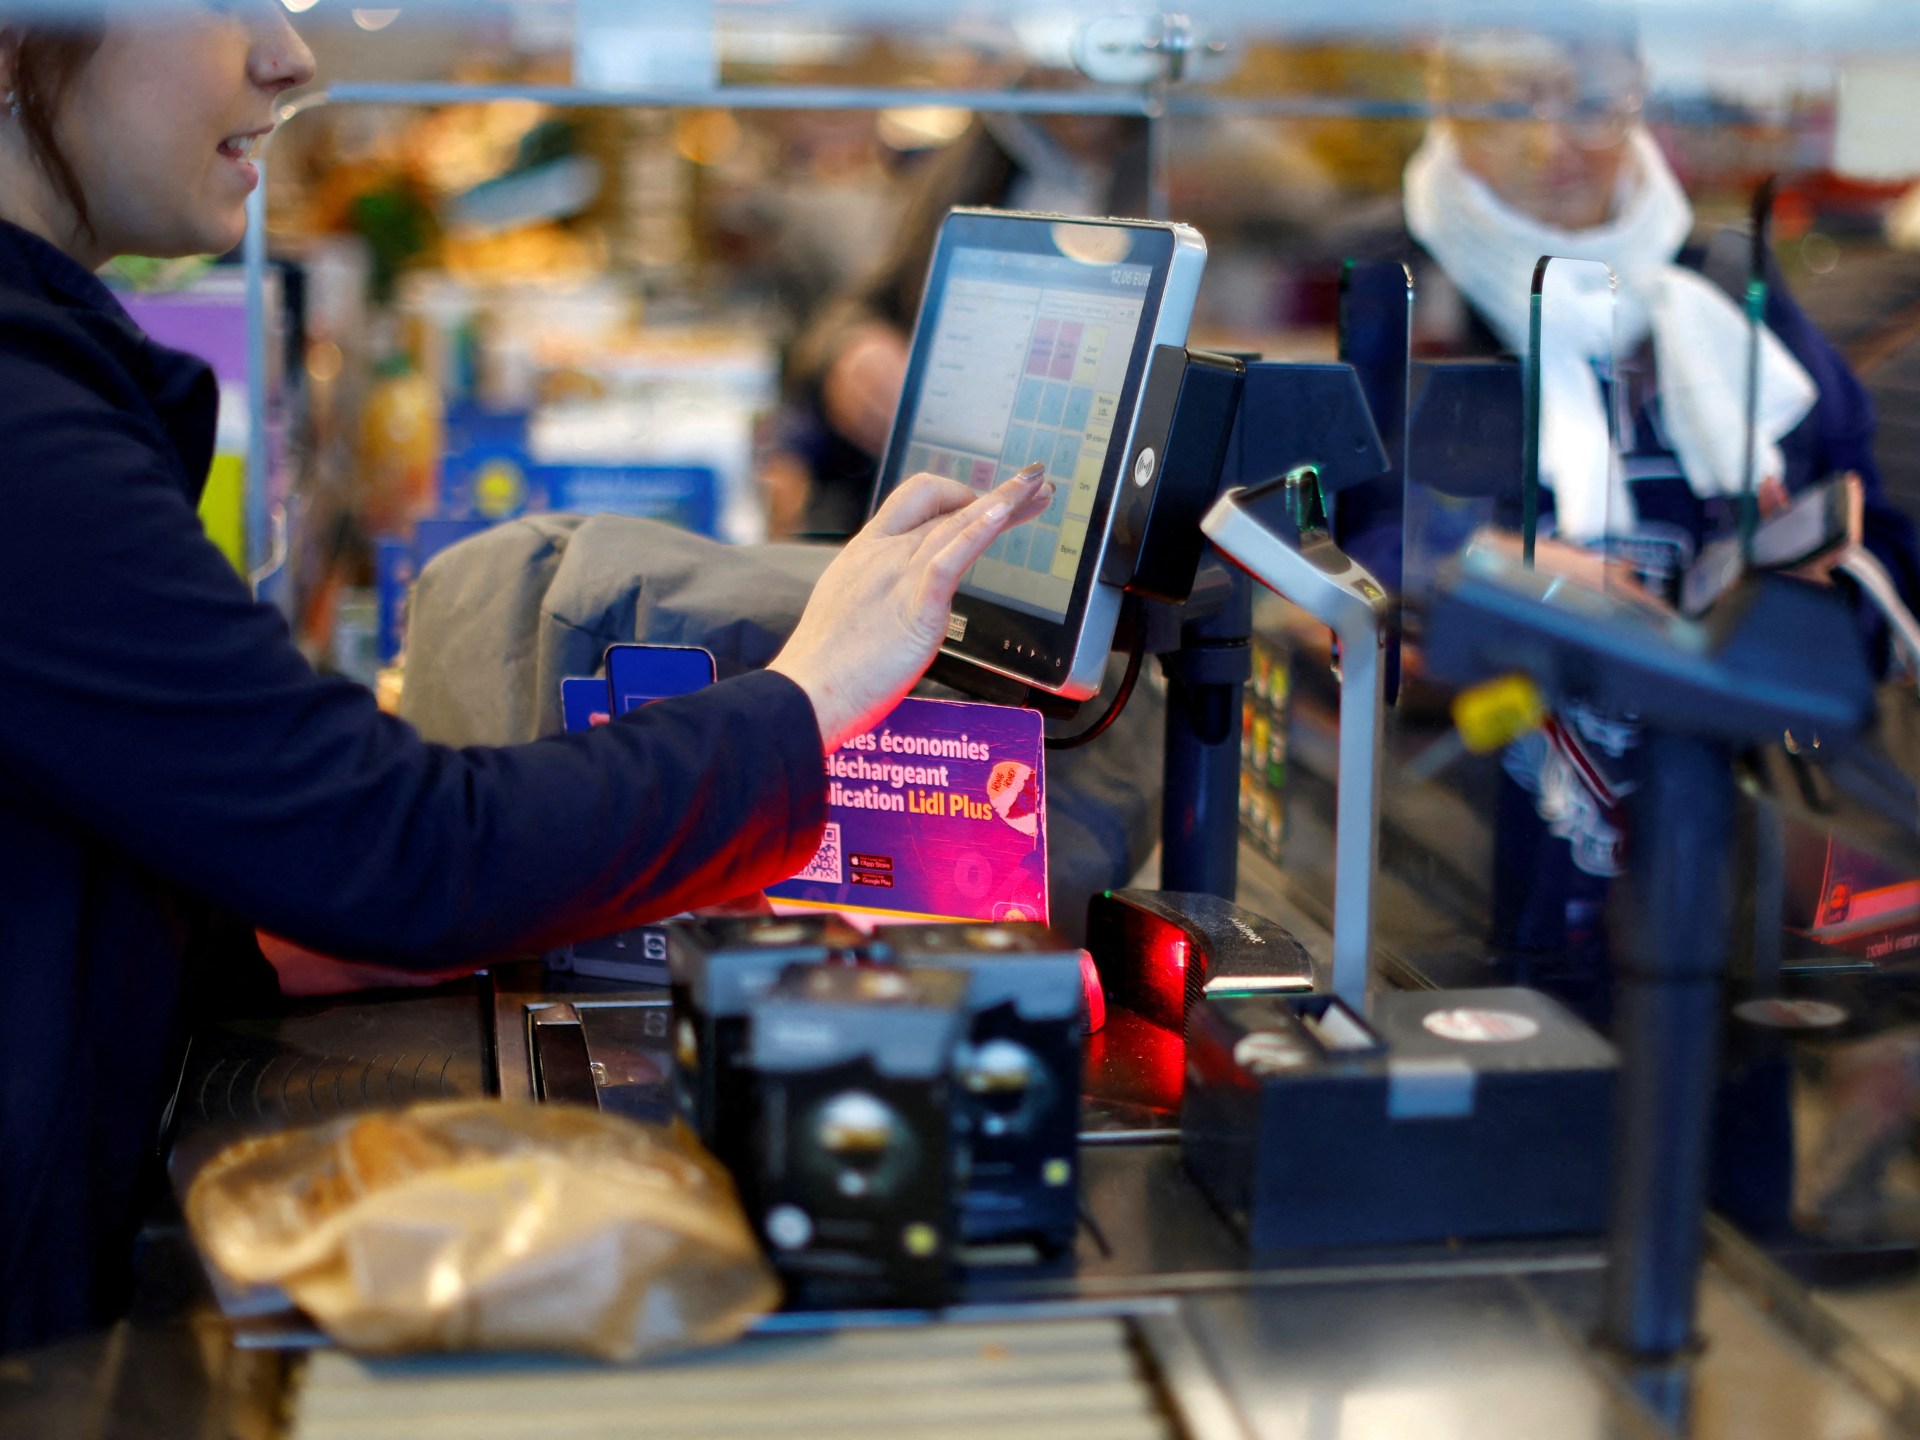 Pengeluaran konsumen AS naik di bulan Januari, inflasi memanas |  Berita Bisnis dan Ekonomi